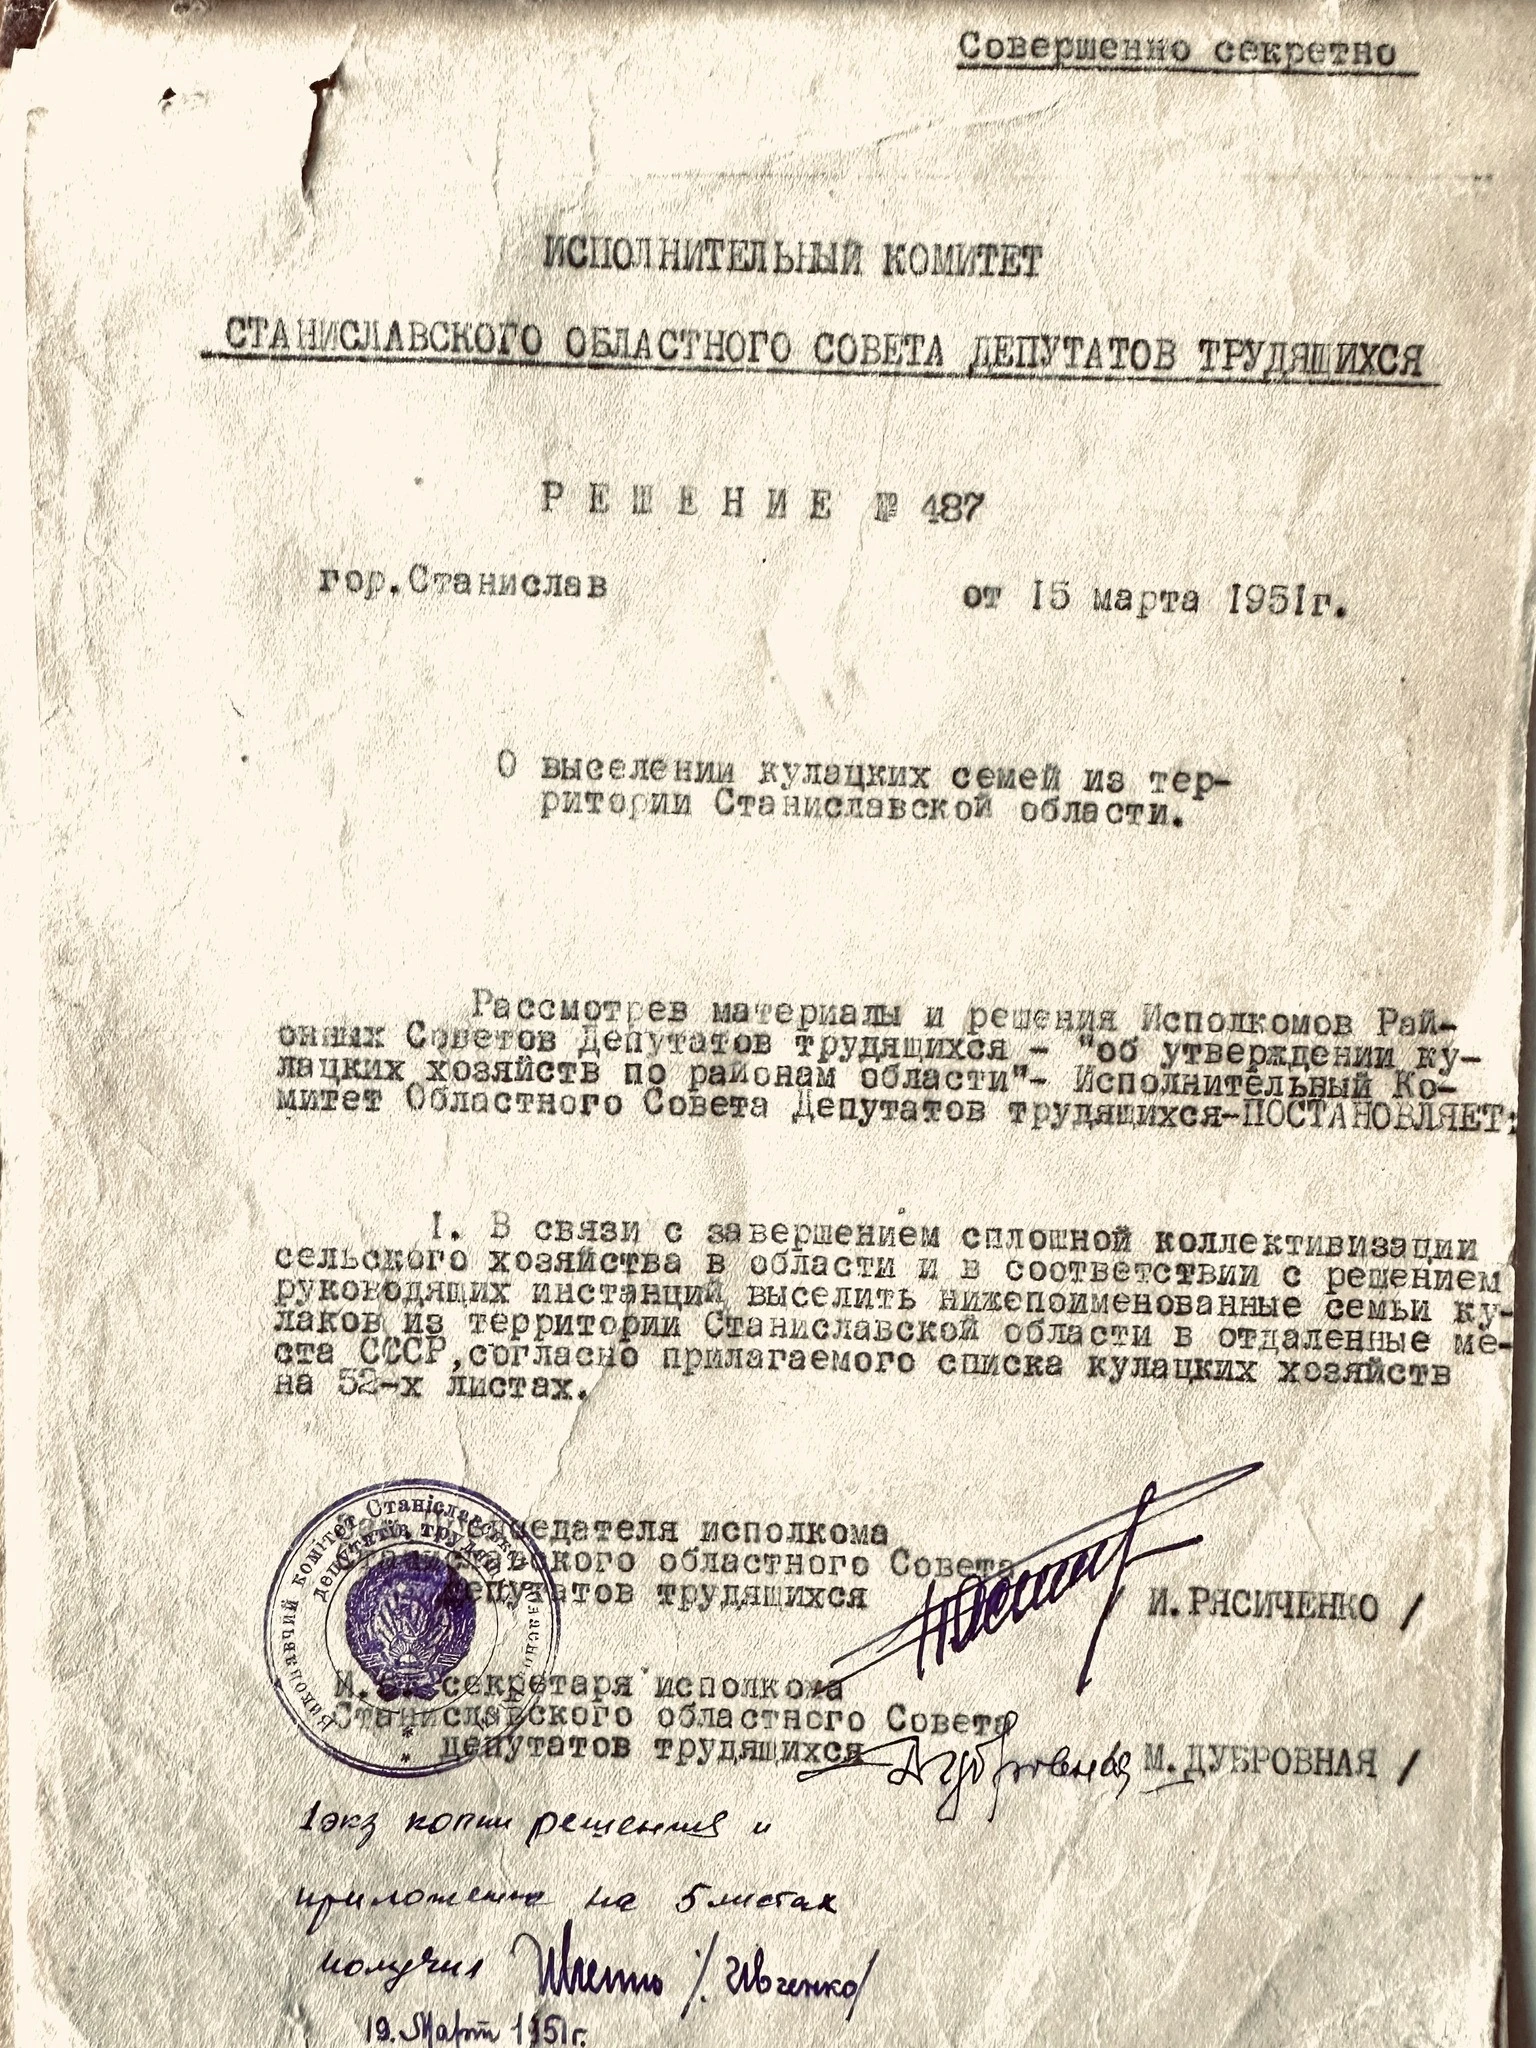 документи про виселення людей до Сибіру